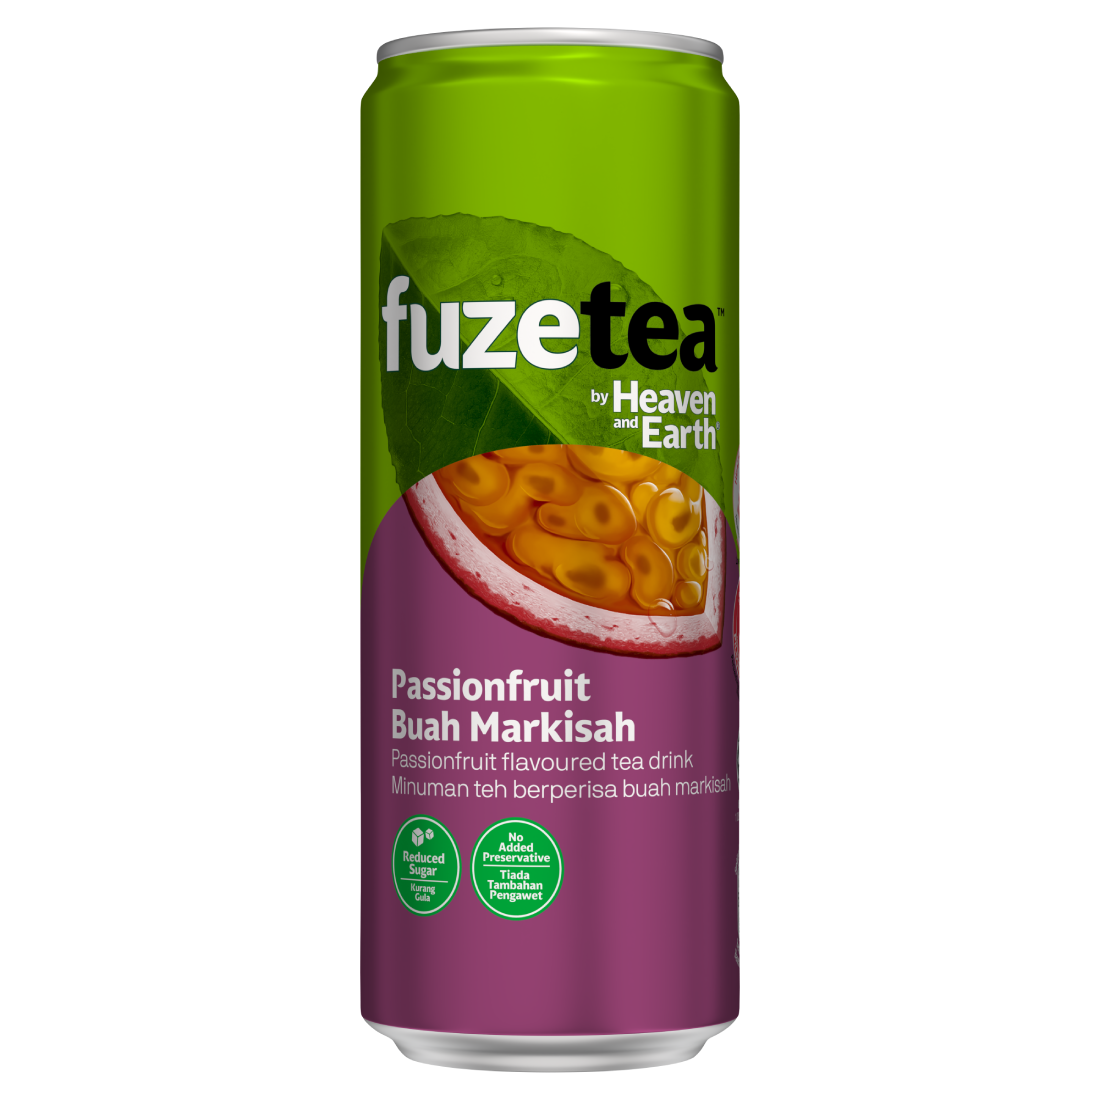 Fuze Tea Ice Passionfruit Tea can